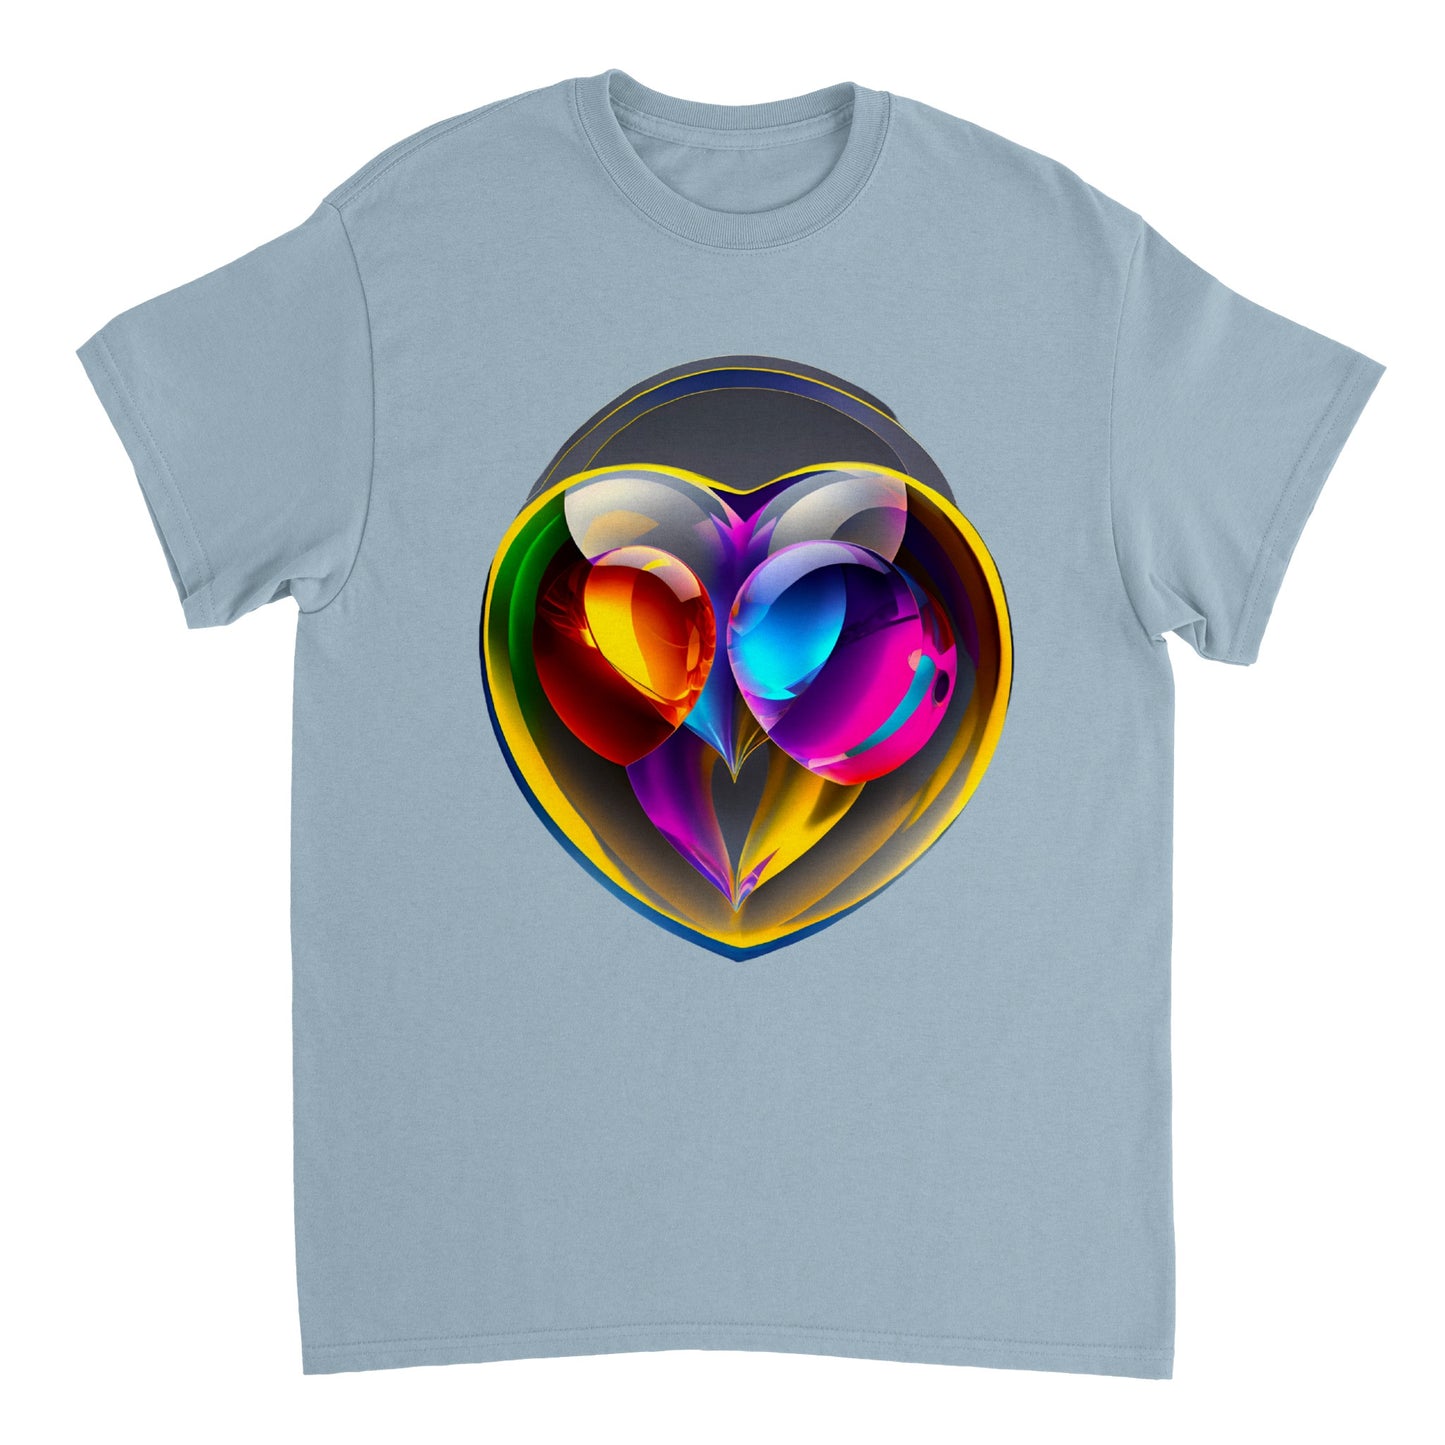 Love Heart - Heavyweight Unisex Crewneck T-shirt 15